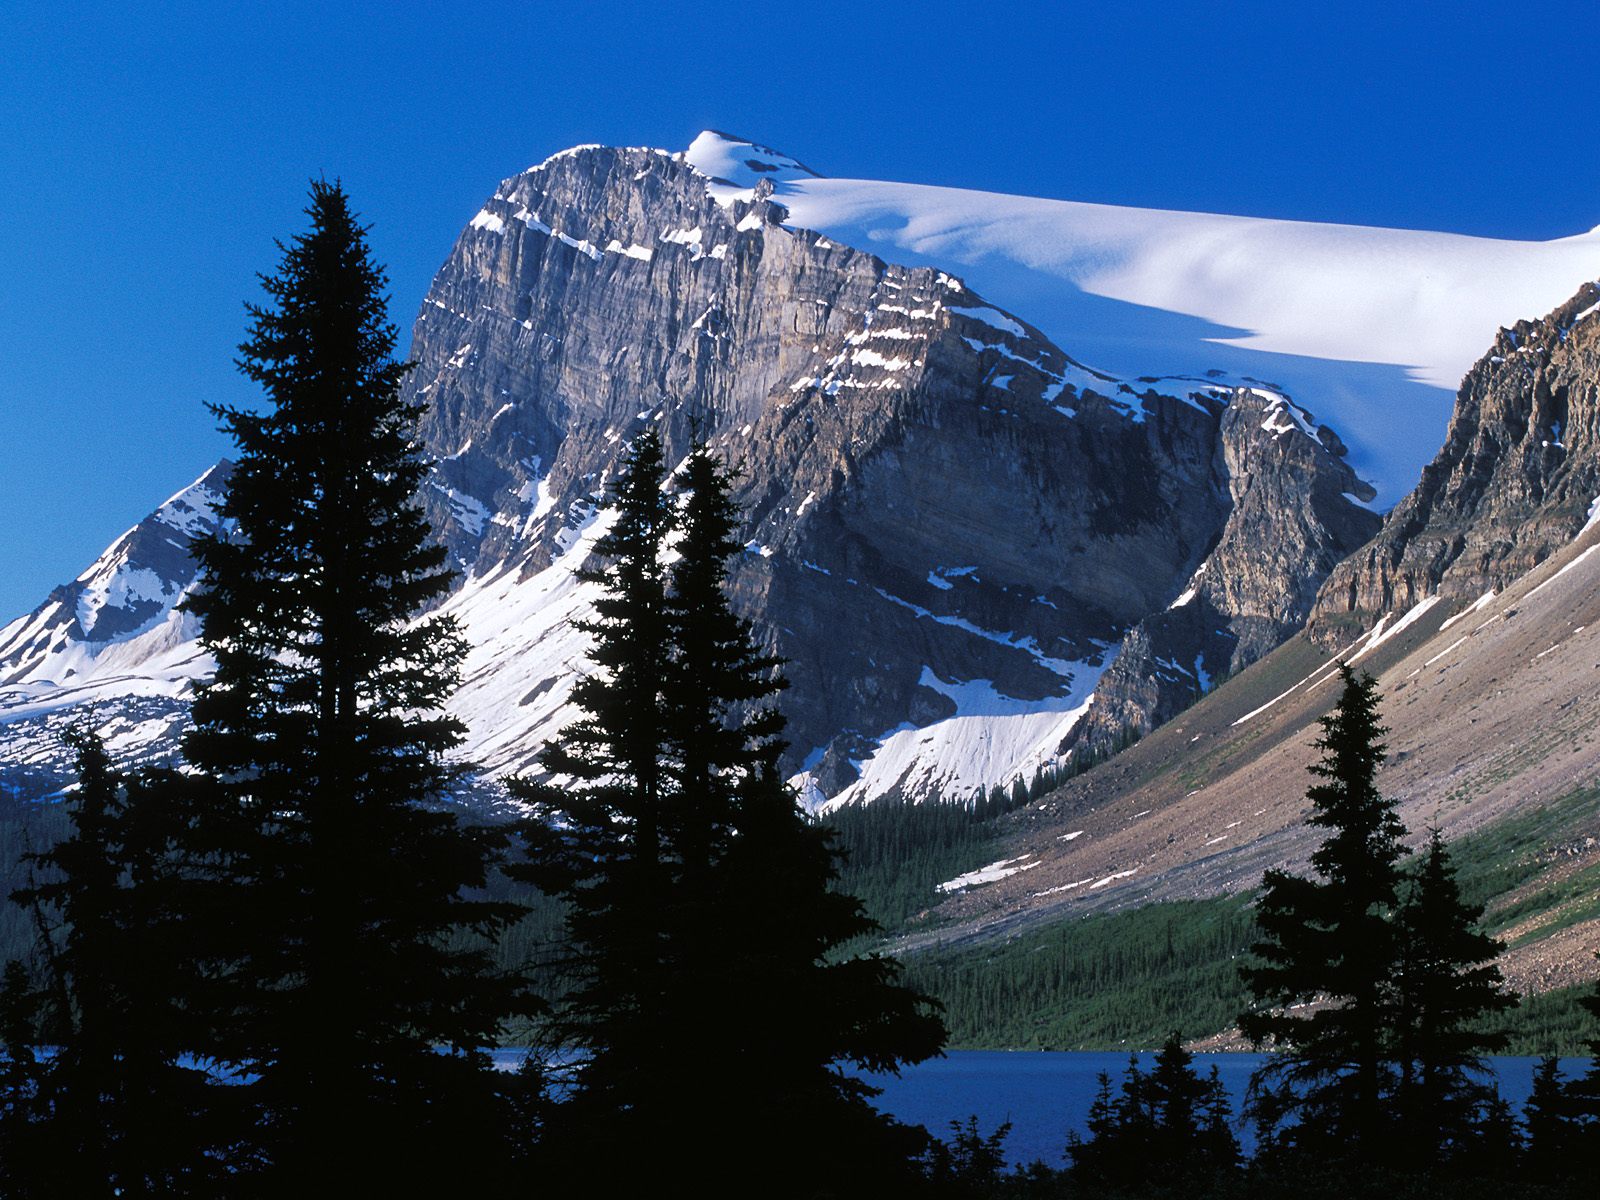  Peak Banff National Park Alberta Canada Wallpaper   Free HQ Wallpapers